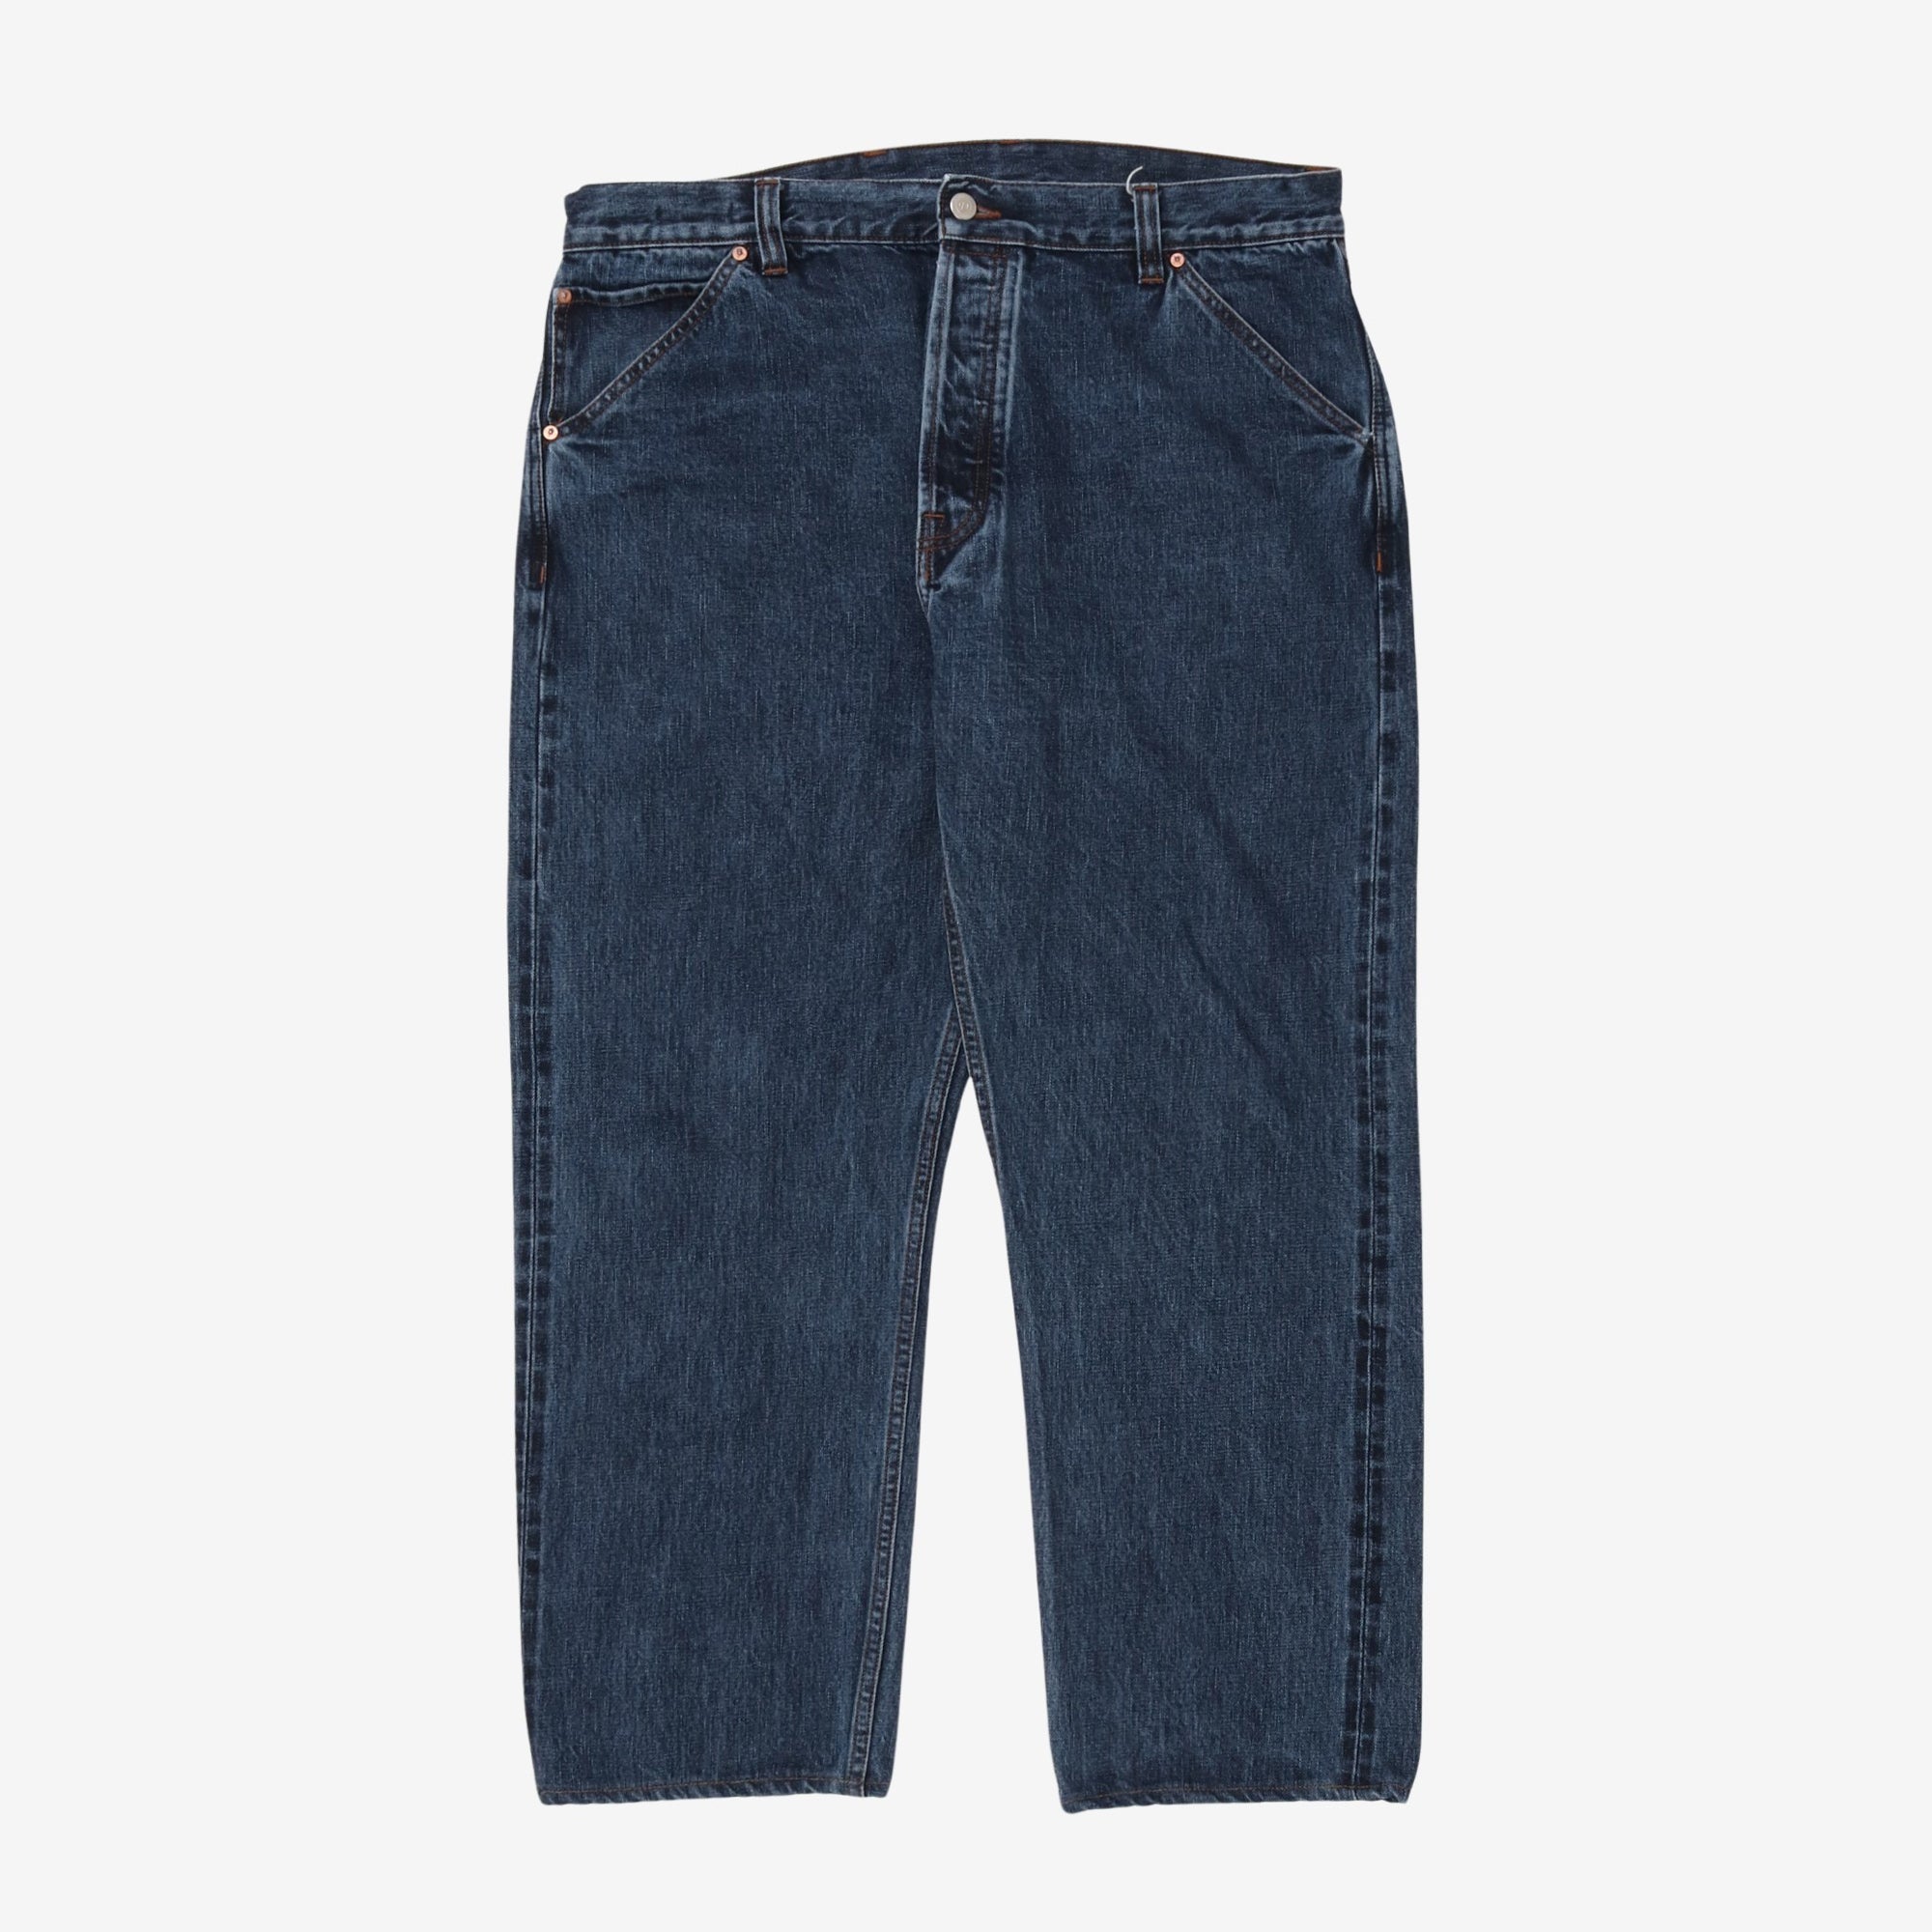 Denim Jeans (36W x 27L)